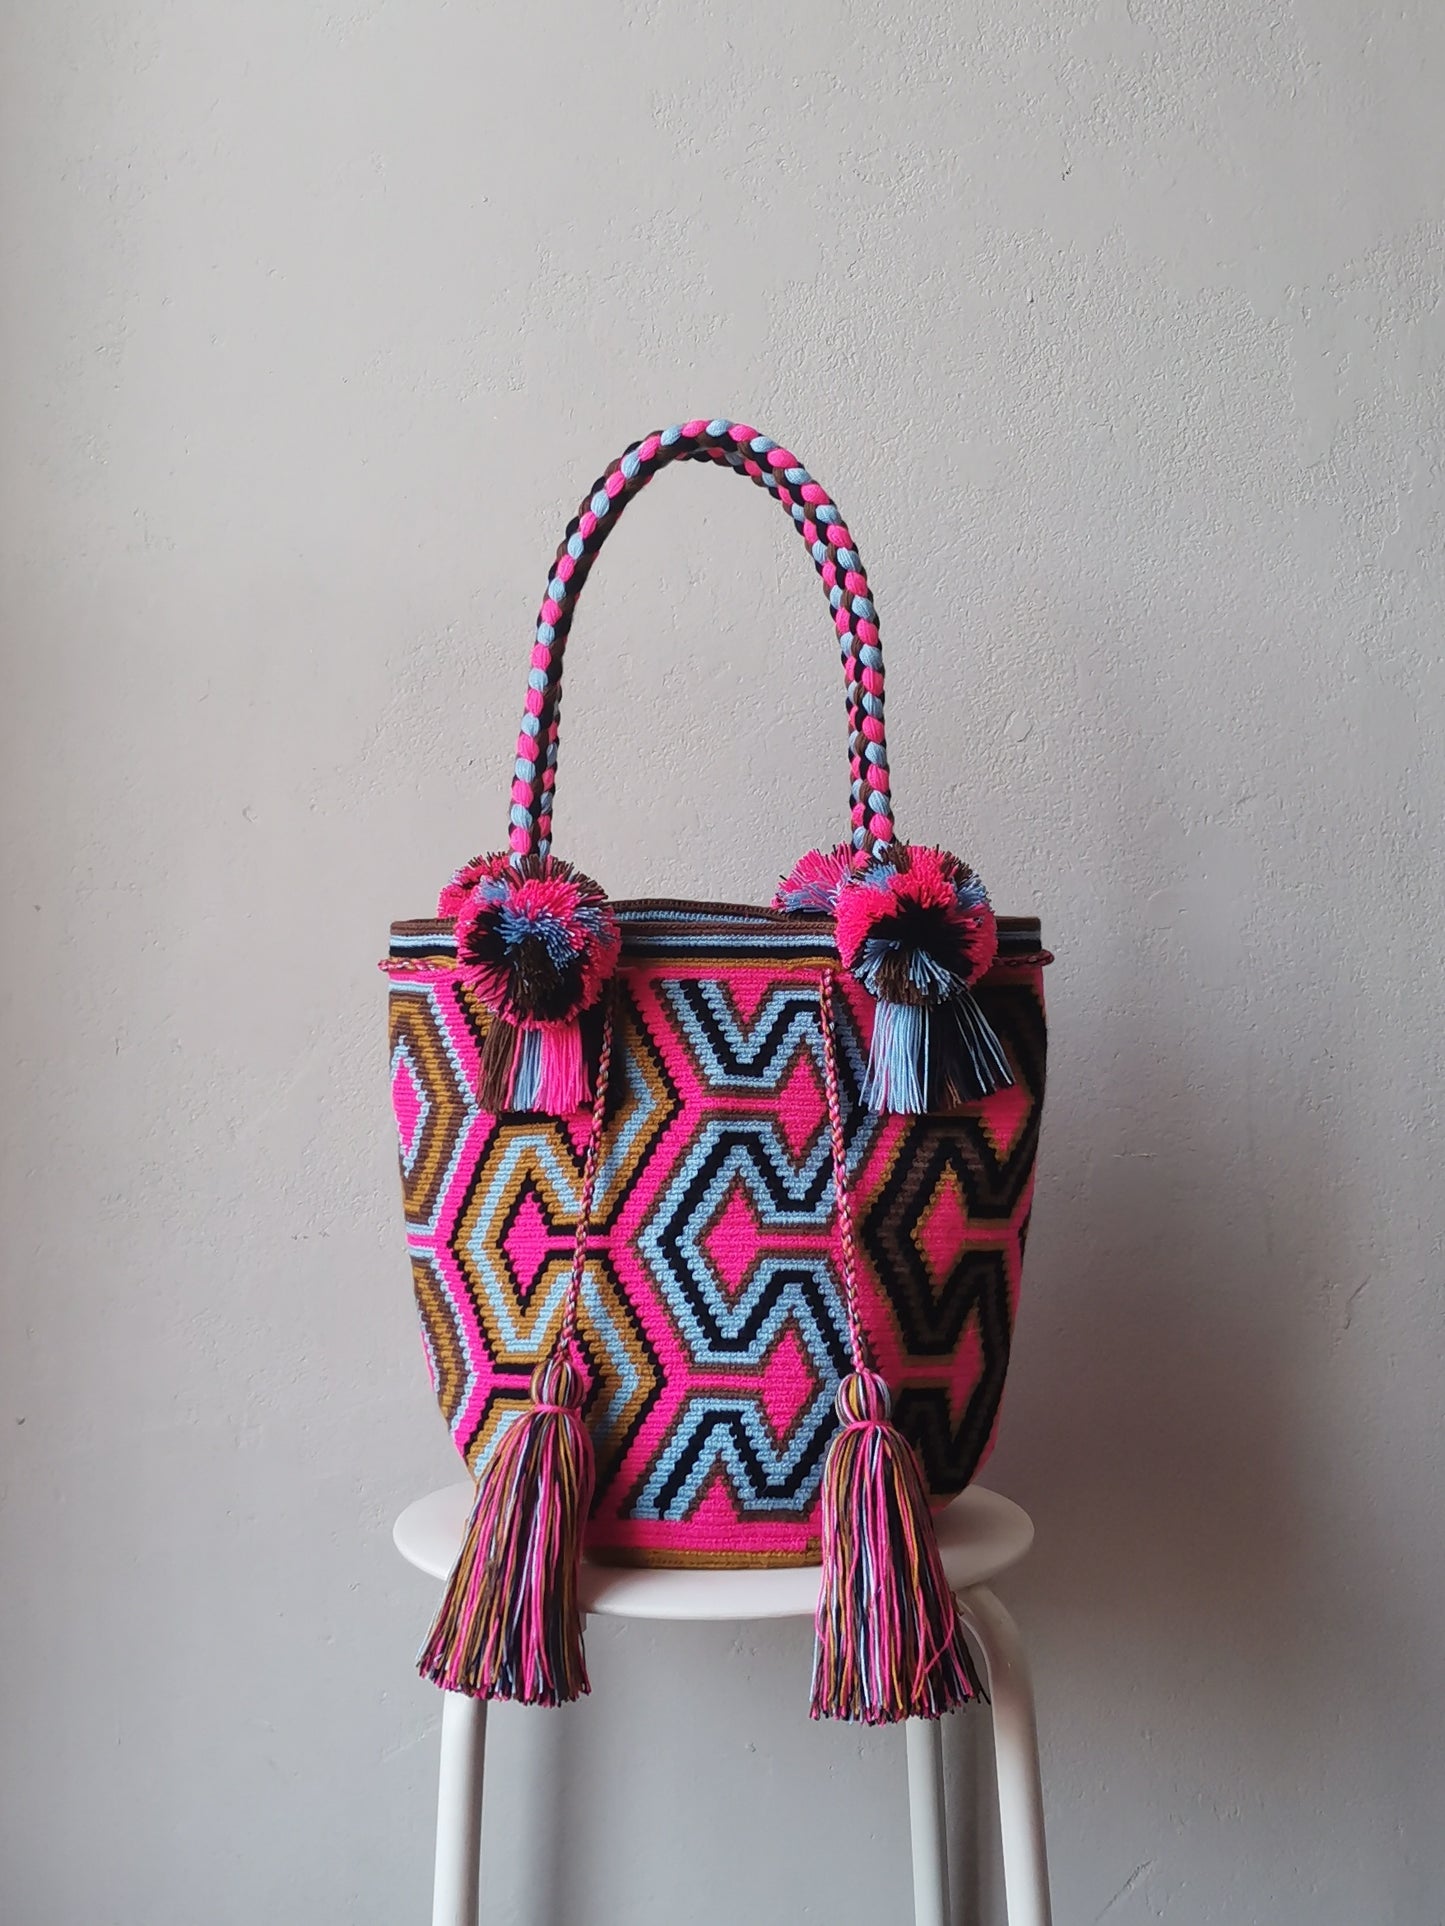 L pink and light blue mochila shoulder bag